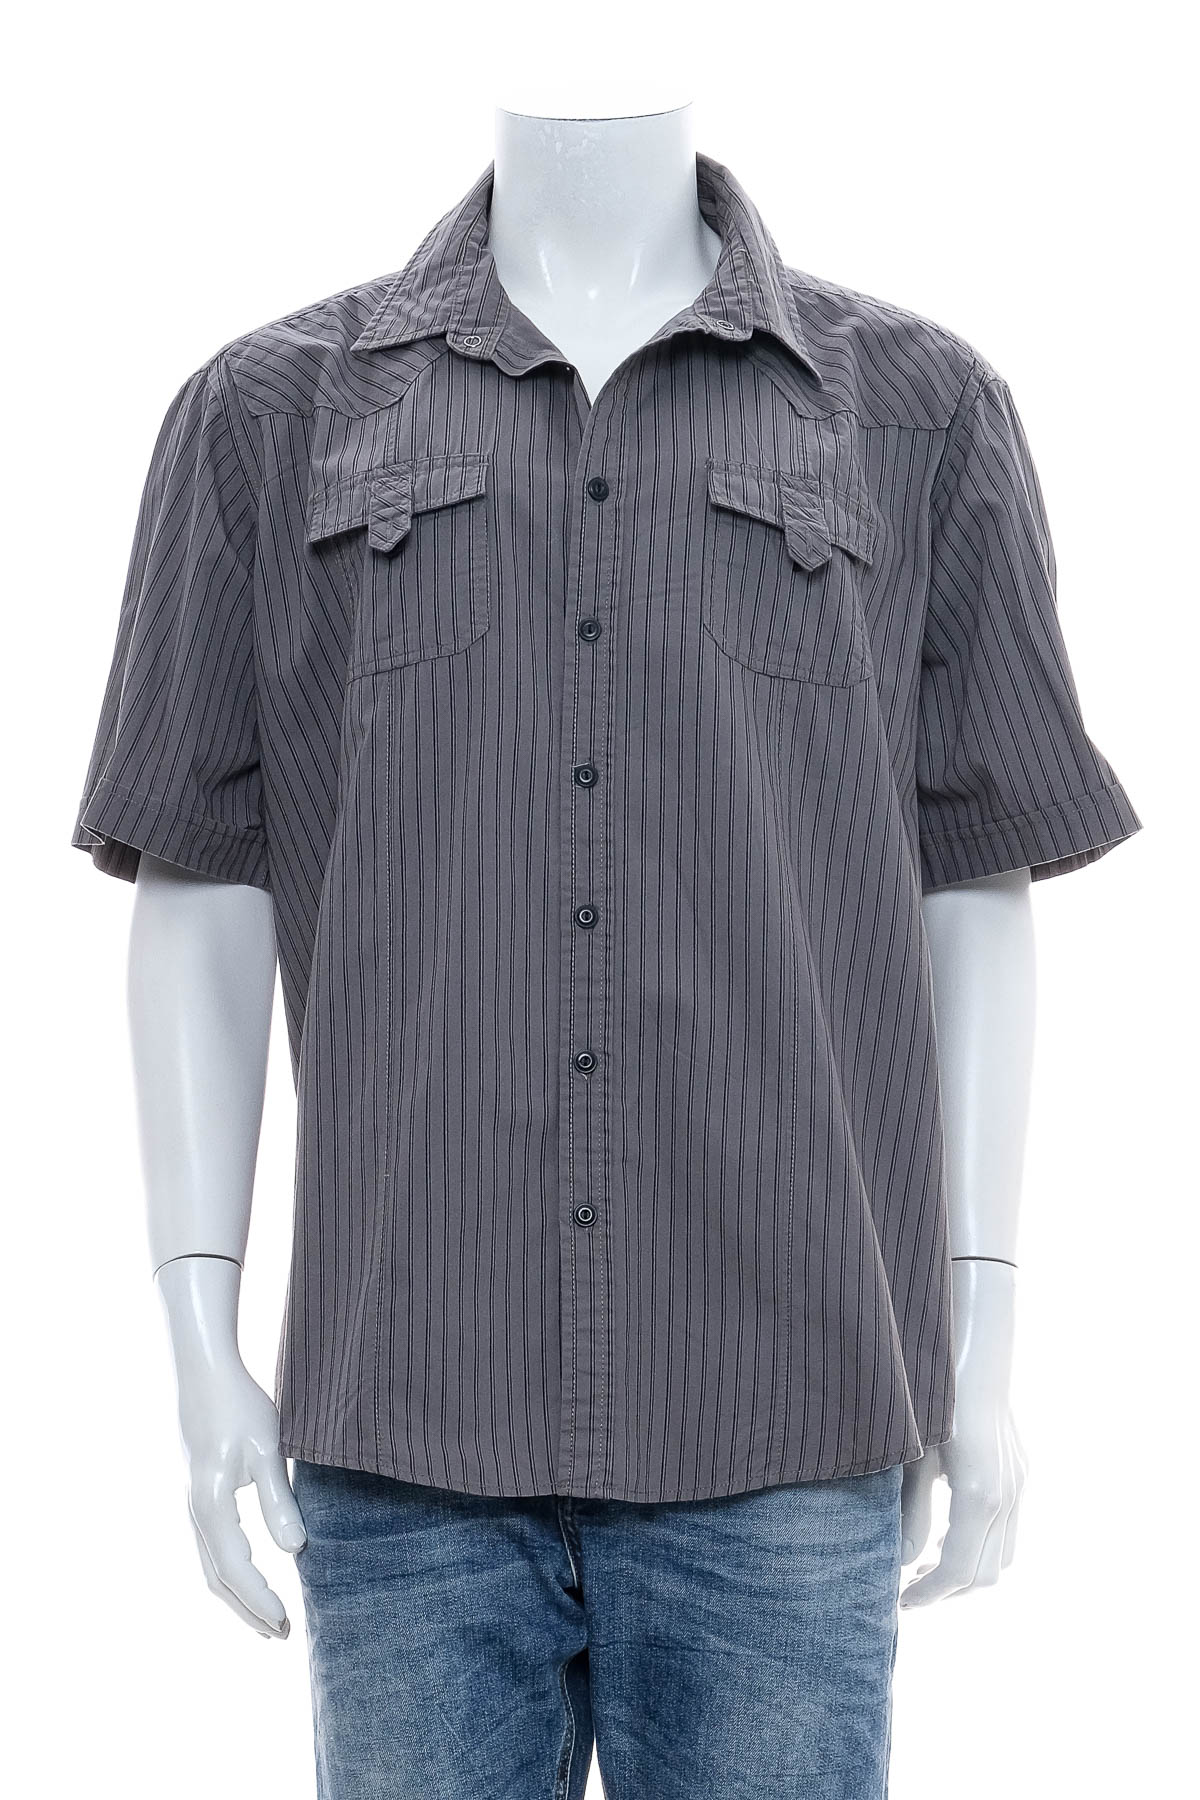 Ανδρικό πουκάμισο - REWARD - 0